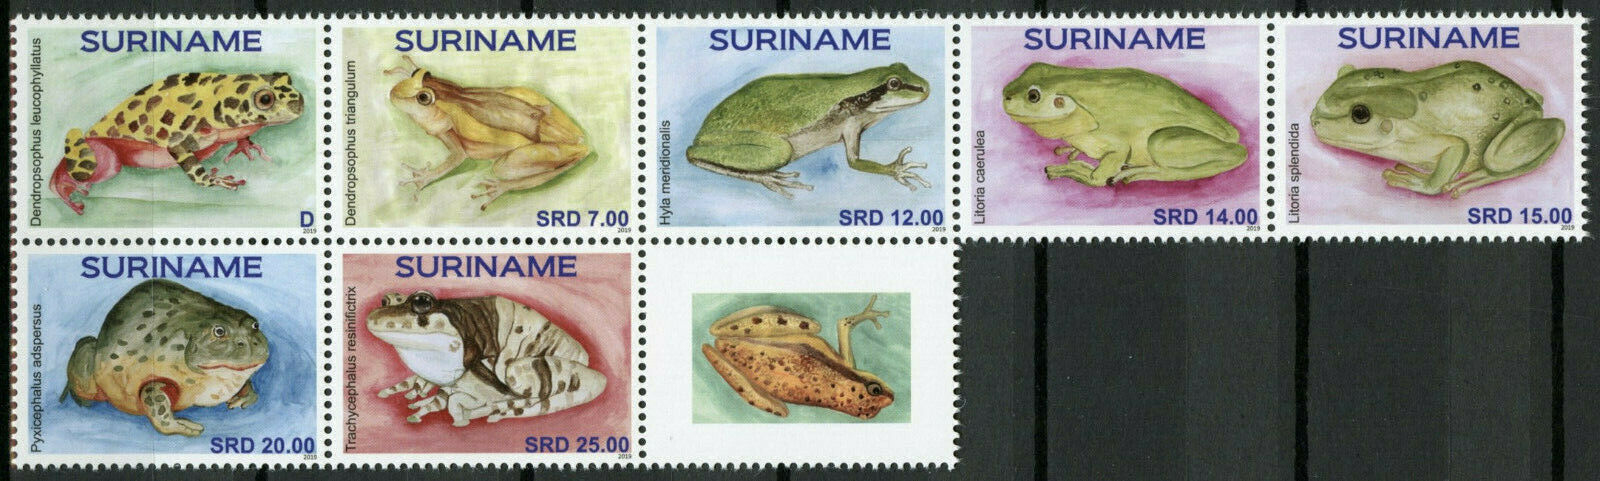 Suriname Frogs Stamps 2019 MNH Frog Amphibians 7v Set